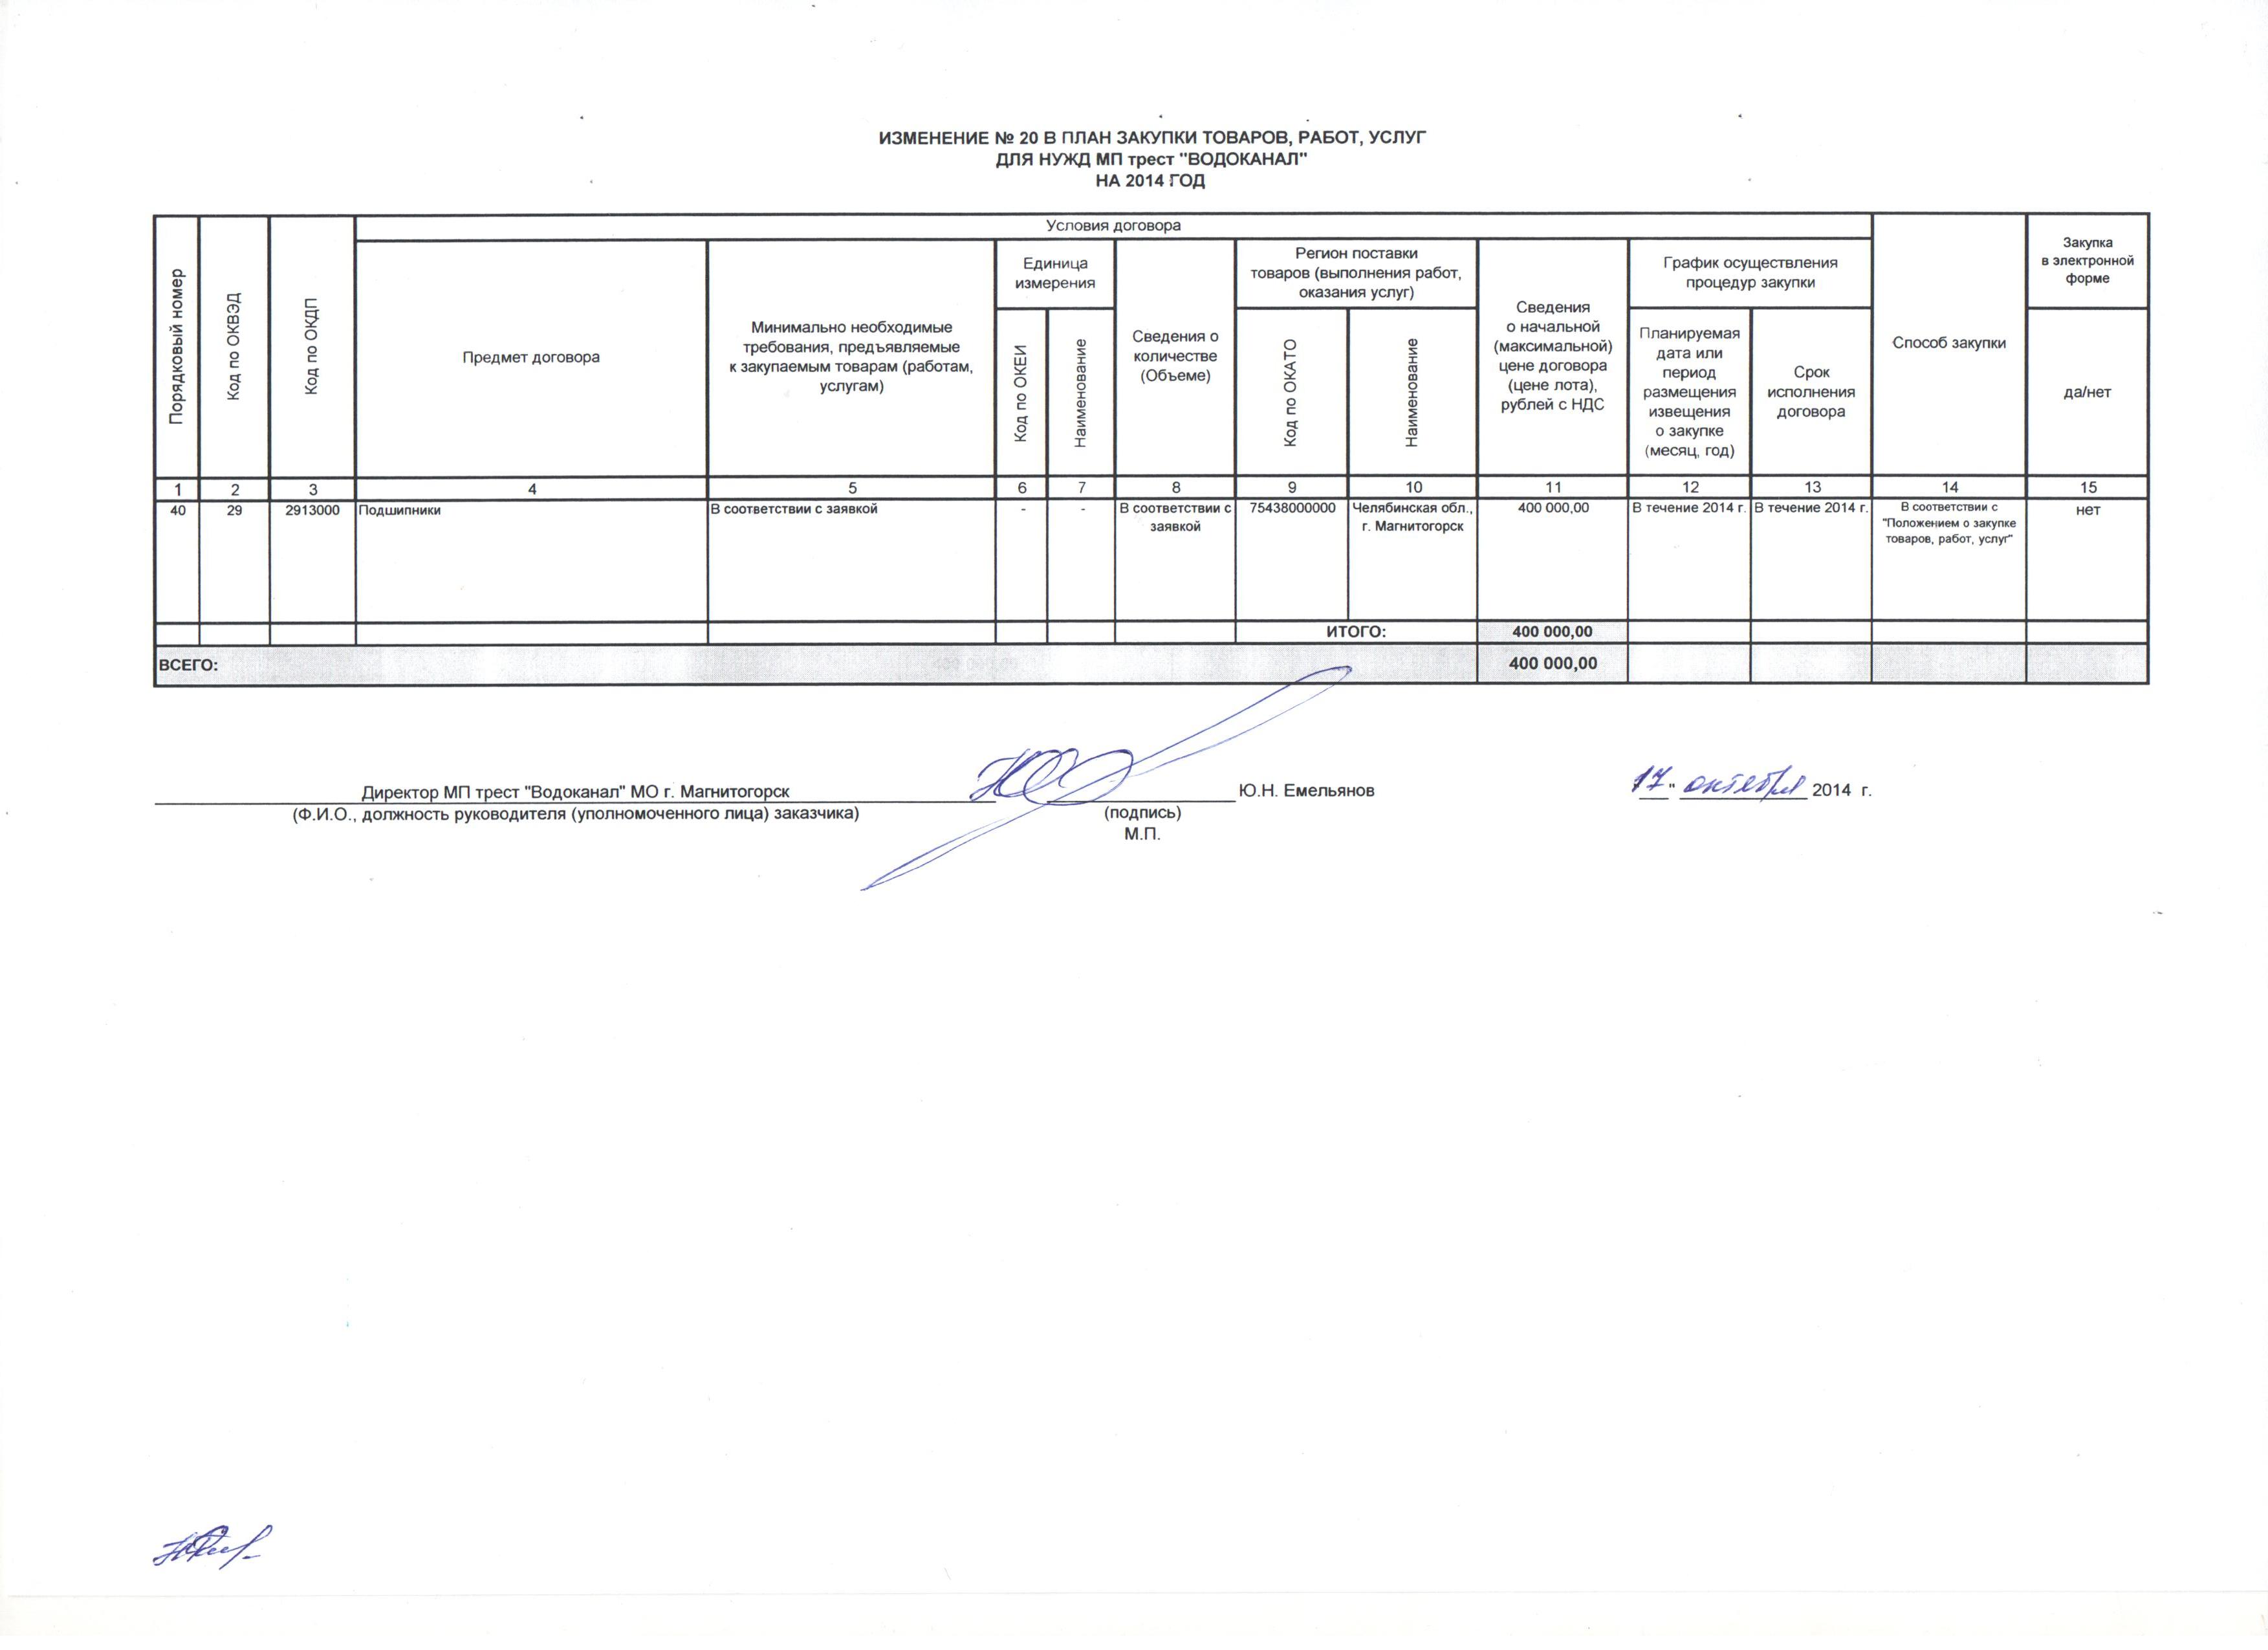 Изменение к плану на 2014 г. 20.jpg